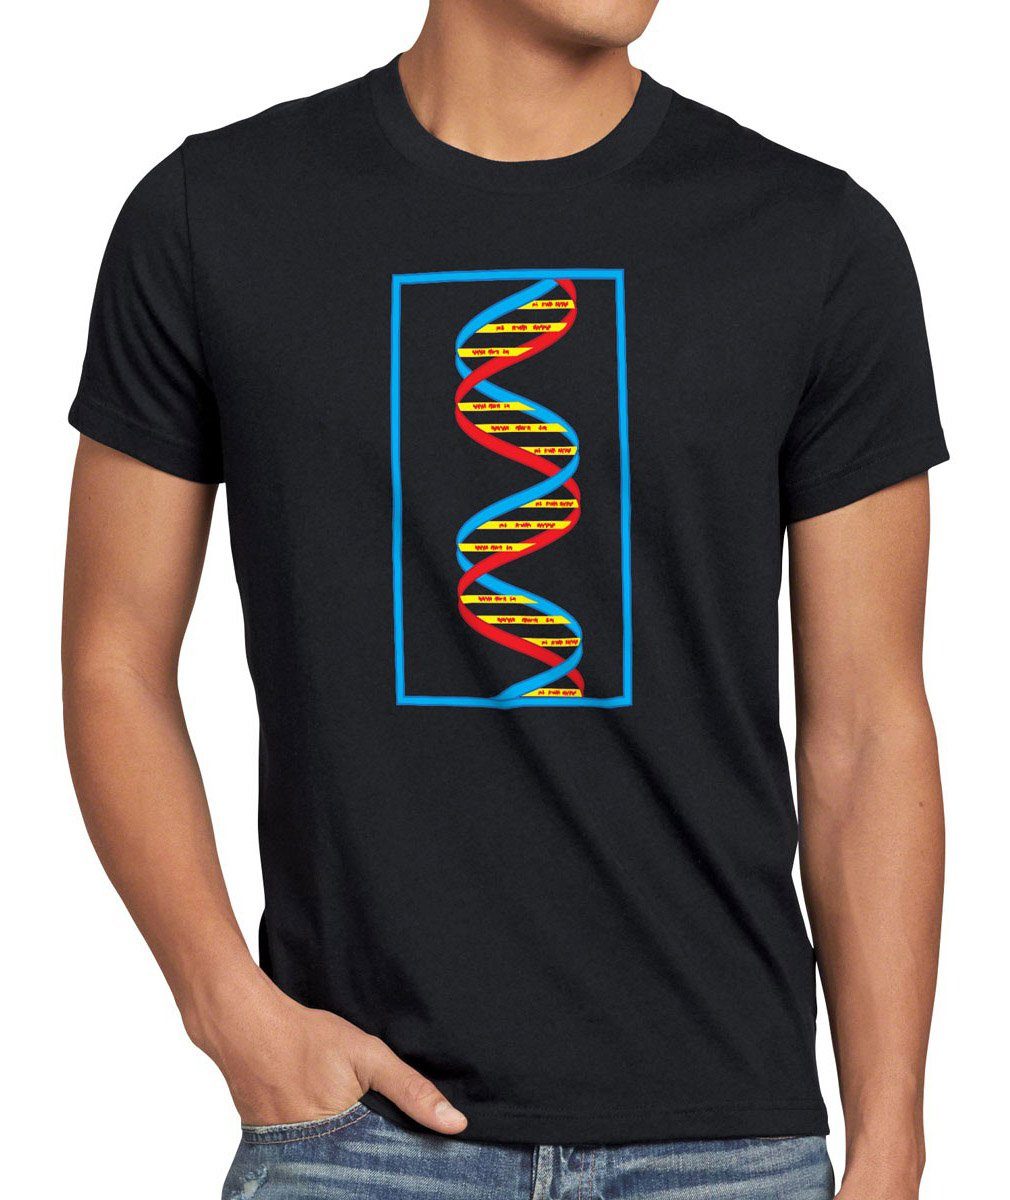 Theory Cooper Big dns Bazinga Sheldon style3 tbbt Herren bio Fan T-Shirt Bang schwarz Print-Shirt Serie DNA